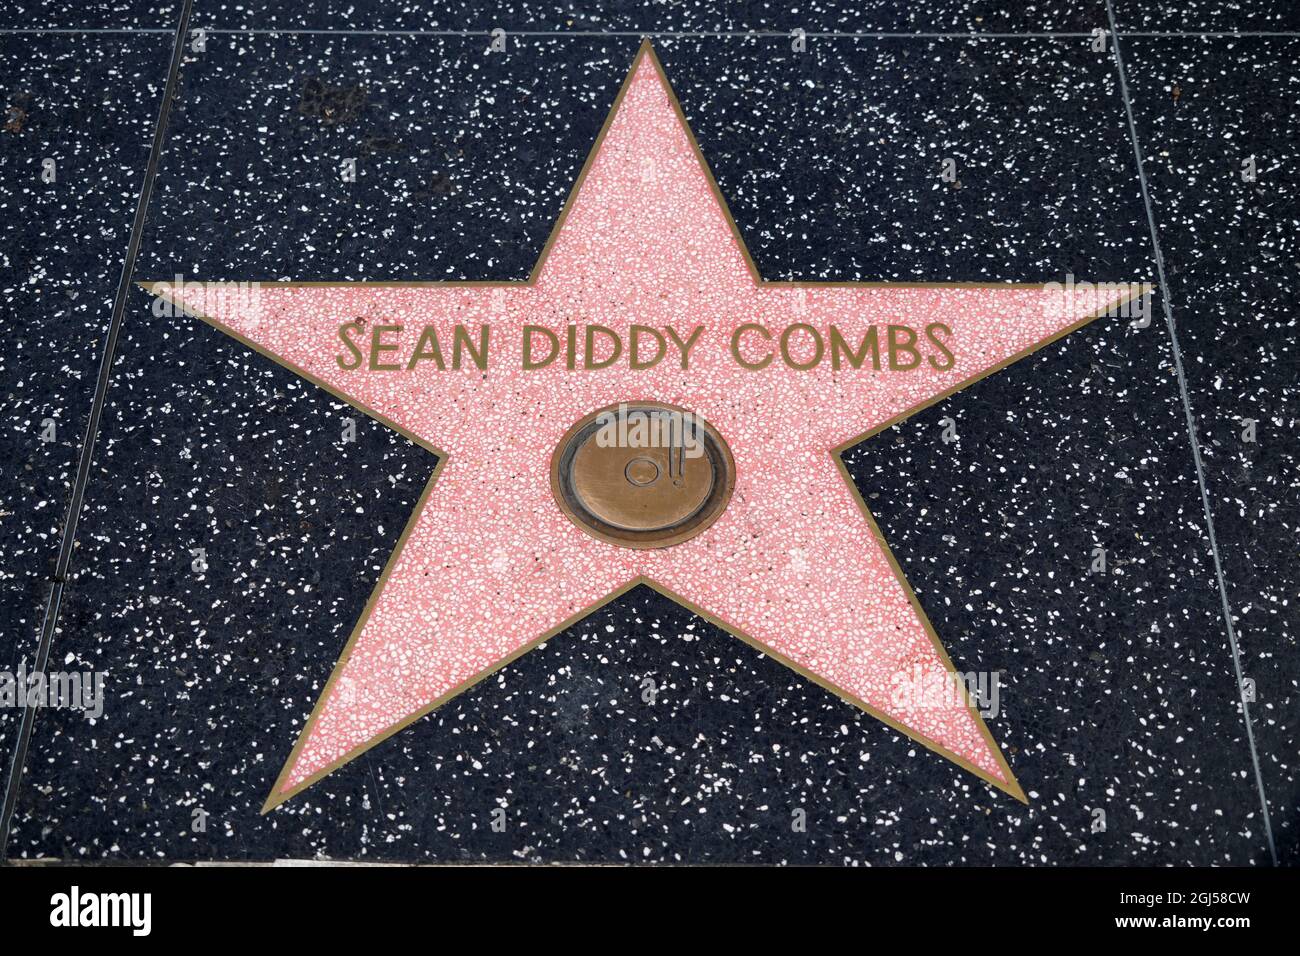 Detailansicht des Stars von Sean Diddy Combs auf dem Hollywood Walk of Fame am Hollywood Blvd., Mittwoch, 8. September 2021, in Los Angeles. Stockfoto